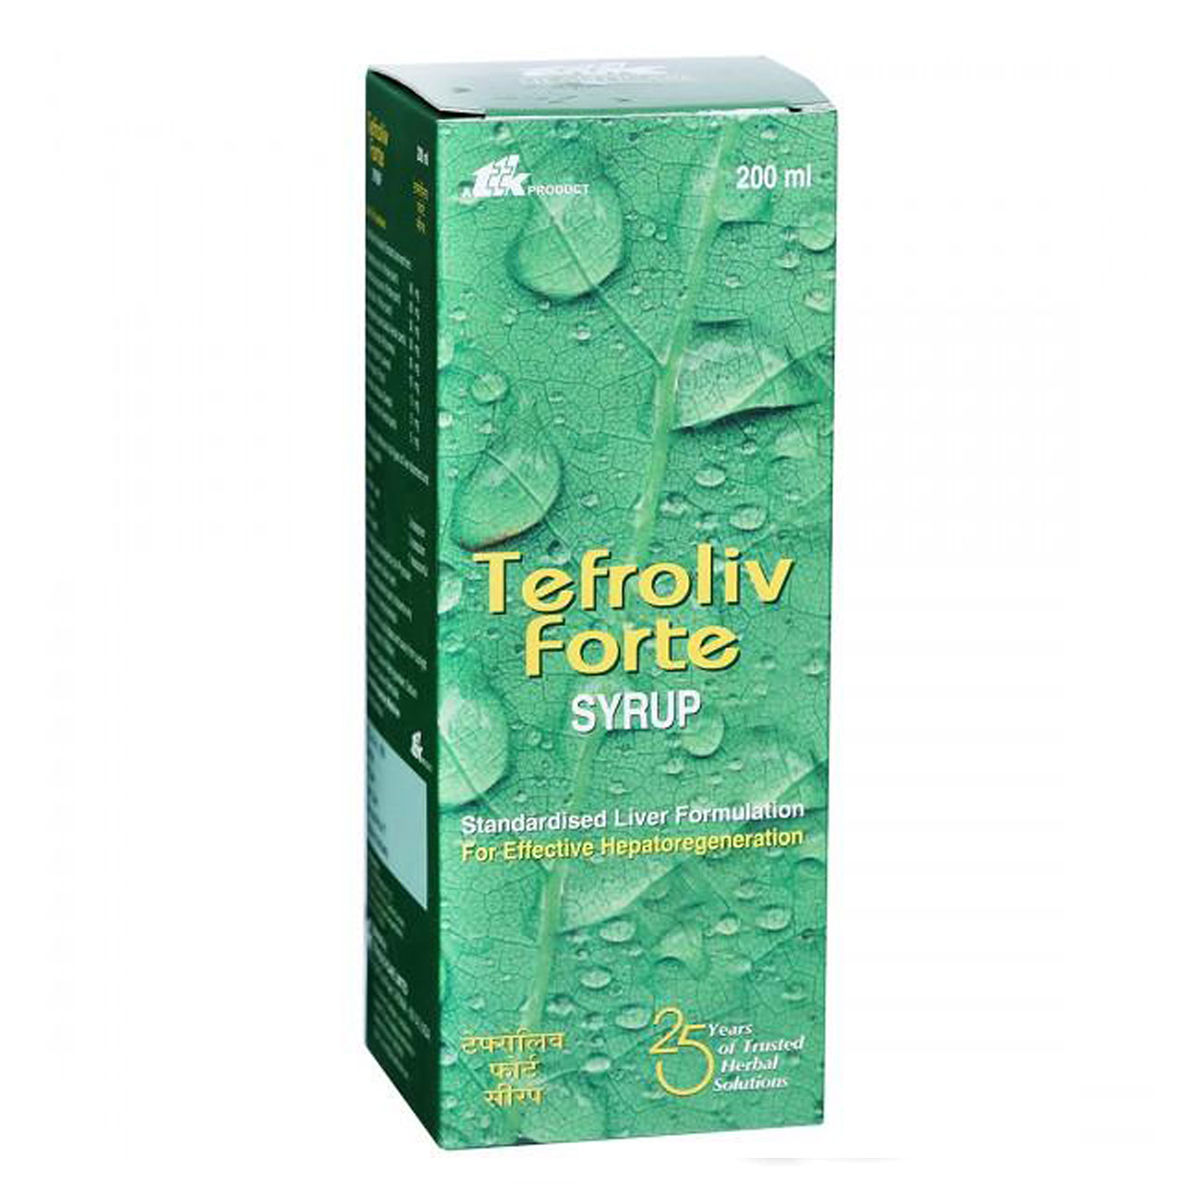 Buy Tefroliv Forte Syrup, 200 ml Online